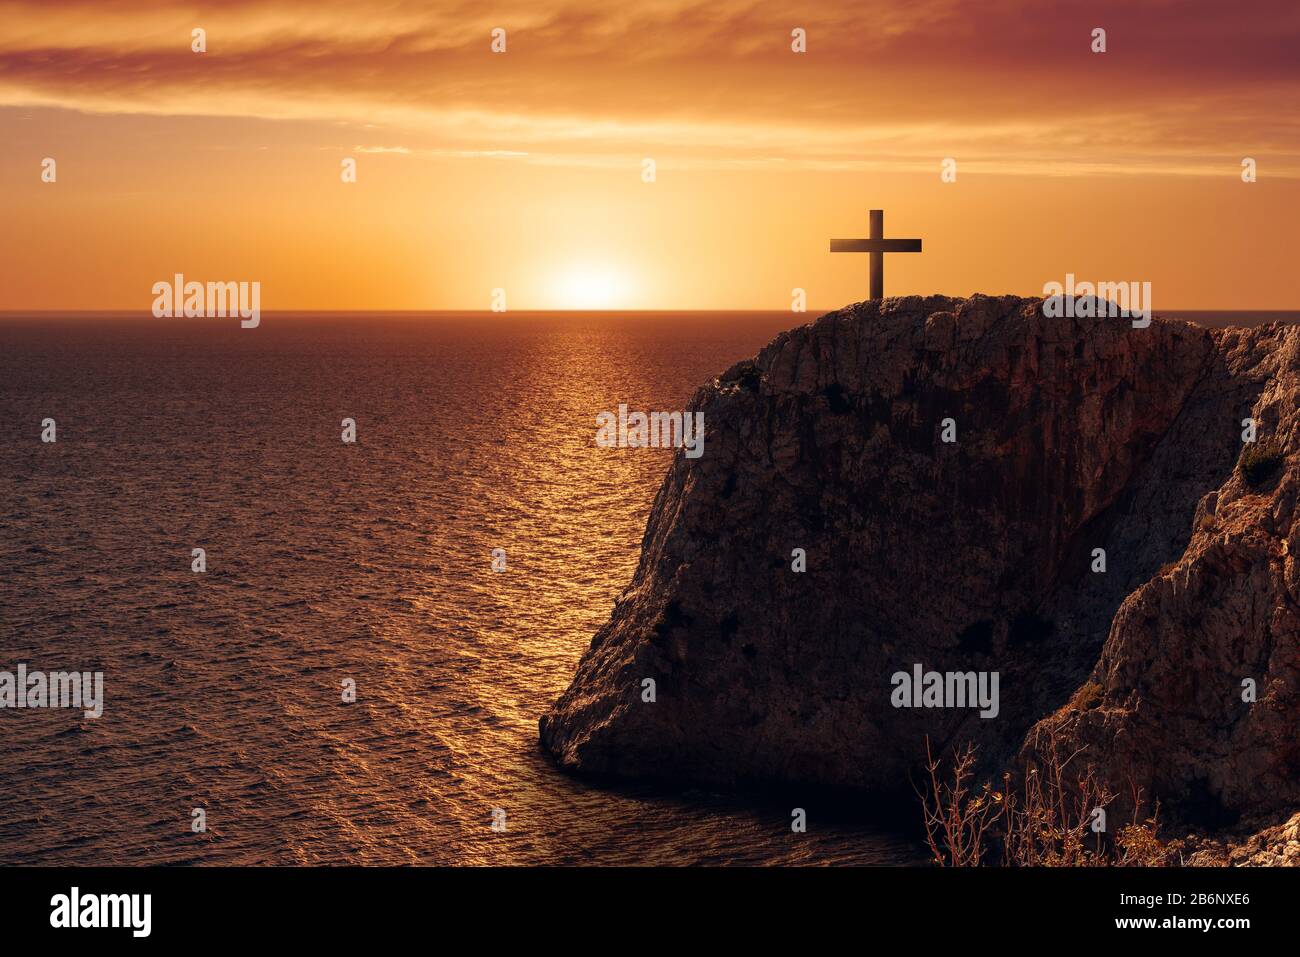 Veduta aerea di una crocifiga sul bordo di una scogliera contro il mare e il tramonto Foto Stock